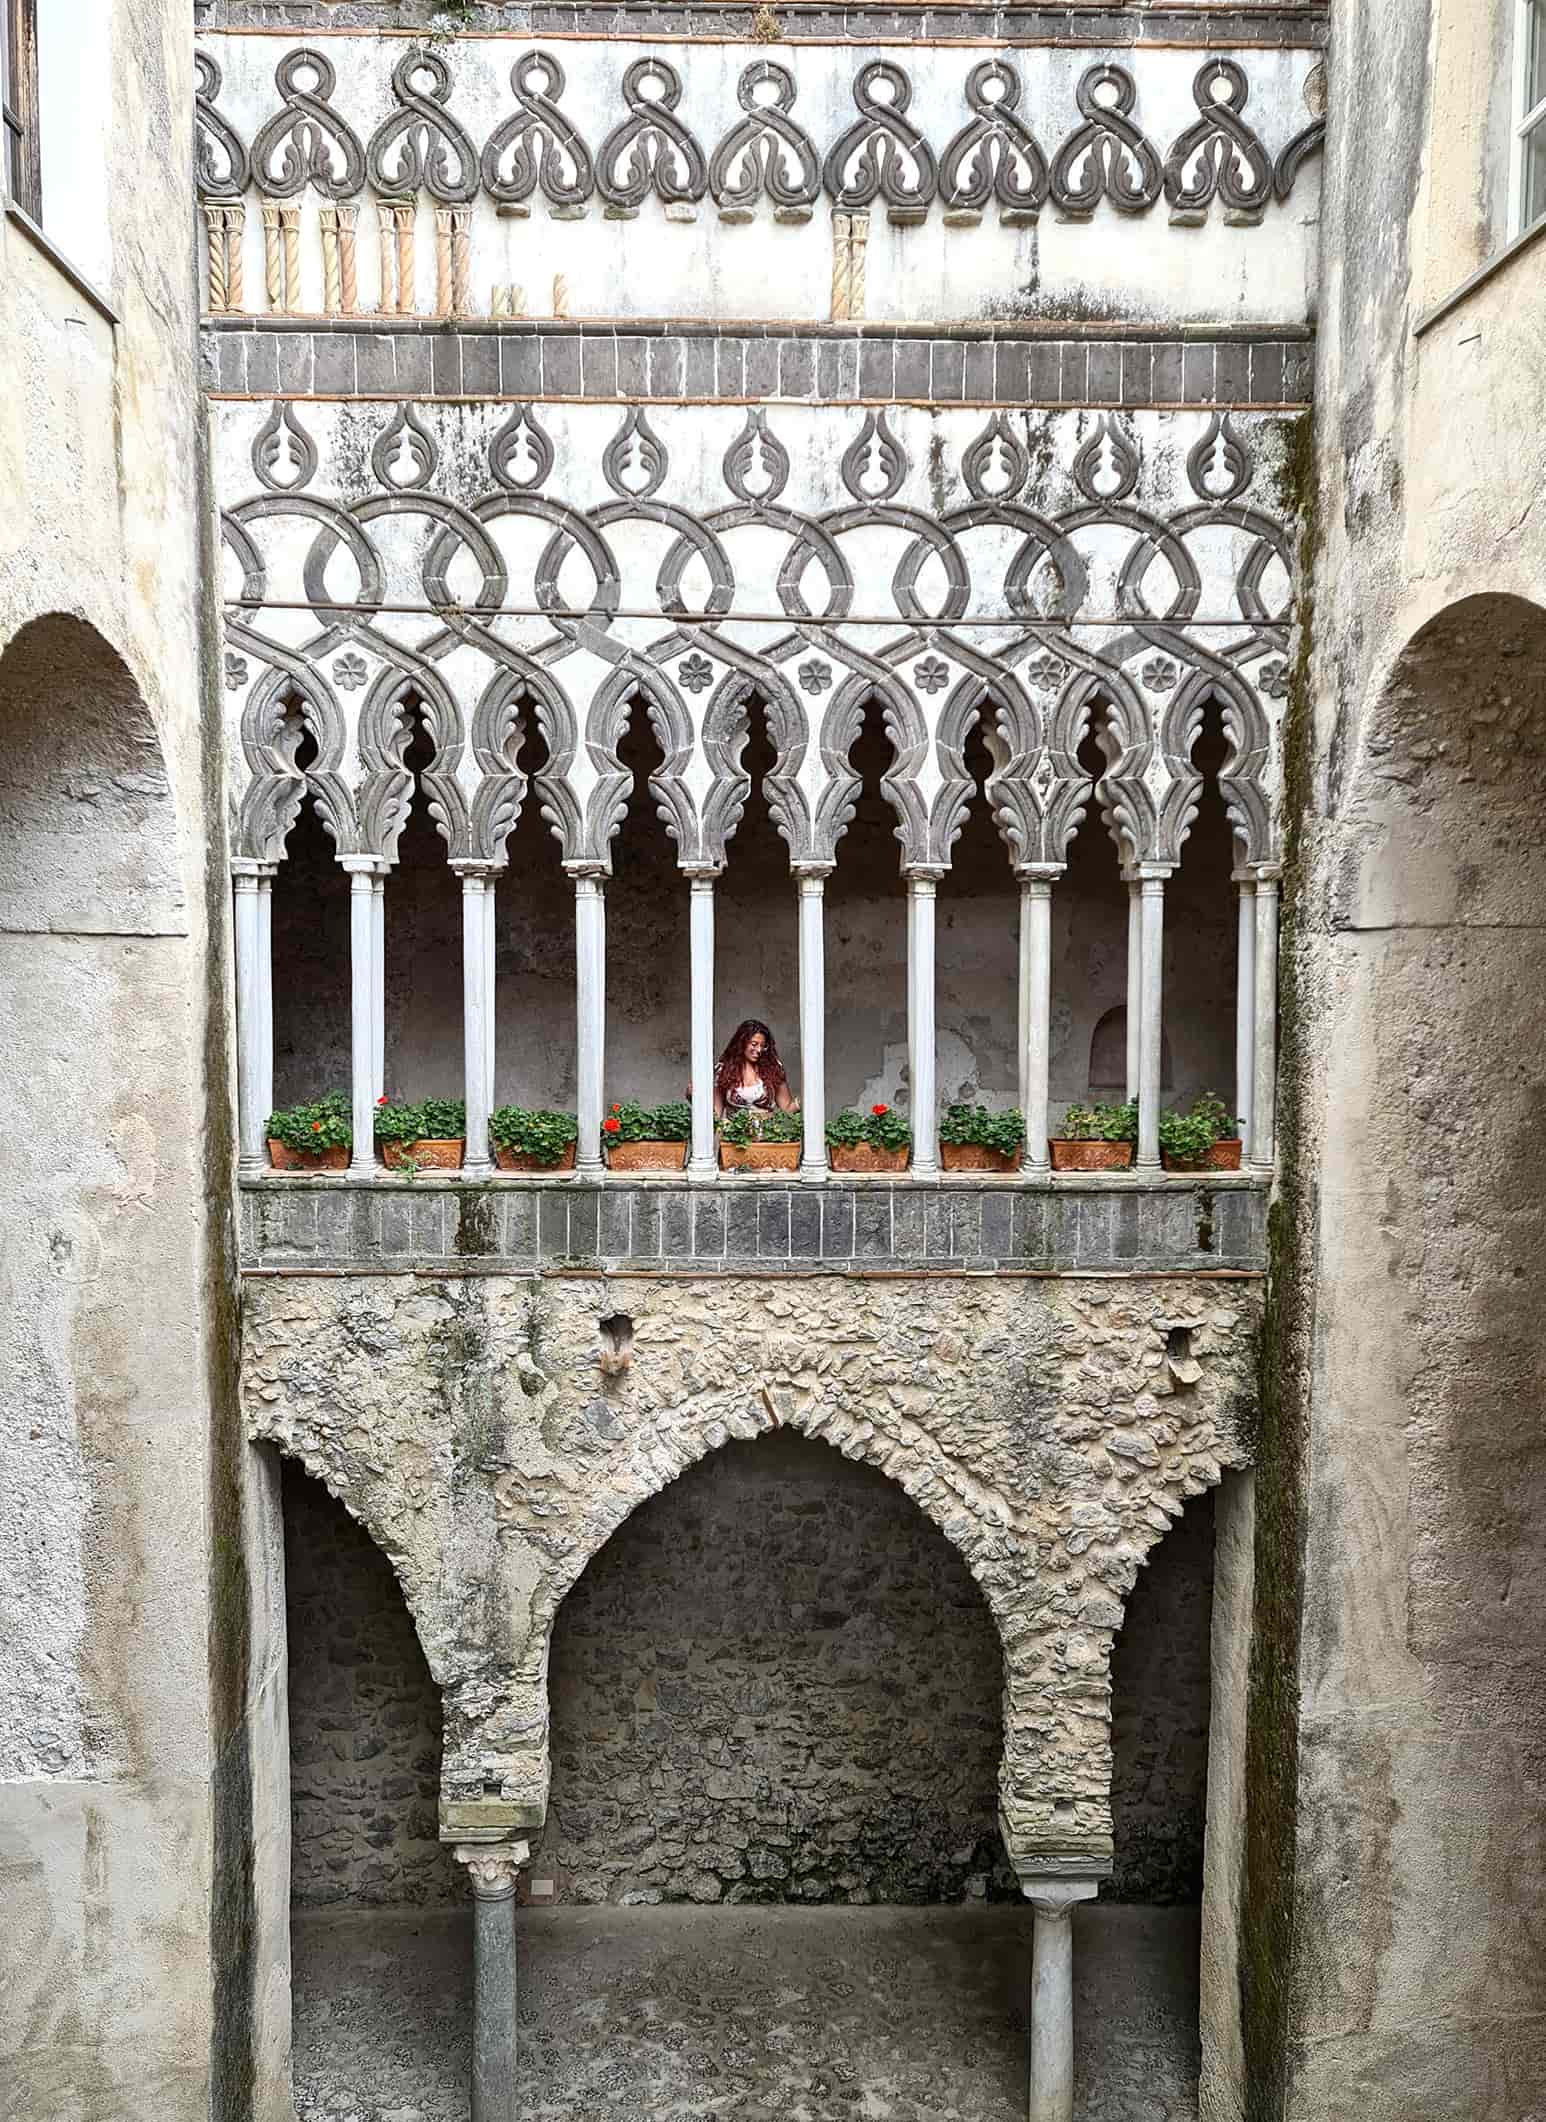 In foto si vede una facciata interna di Villa Rufolo molto elaborata, con tanti archi e colonnine